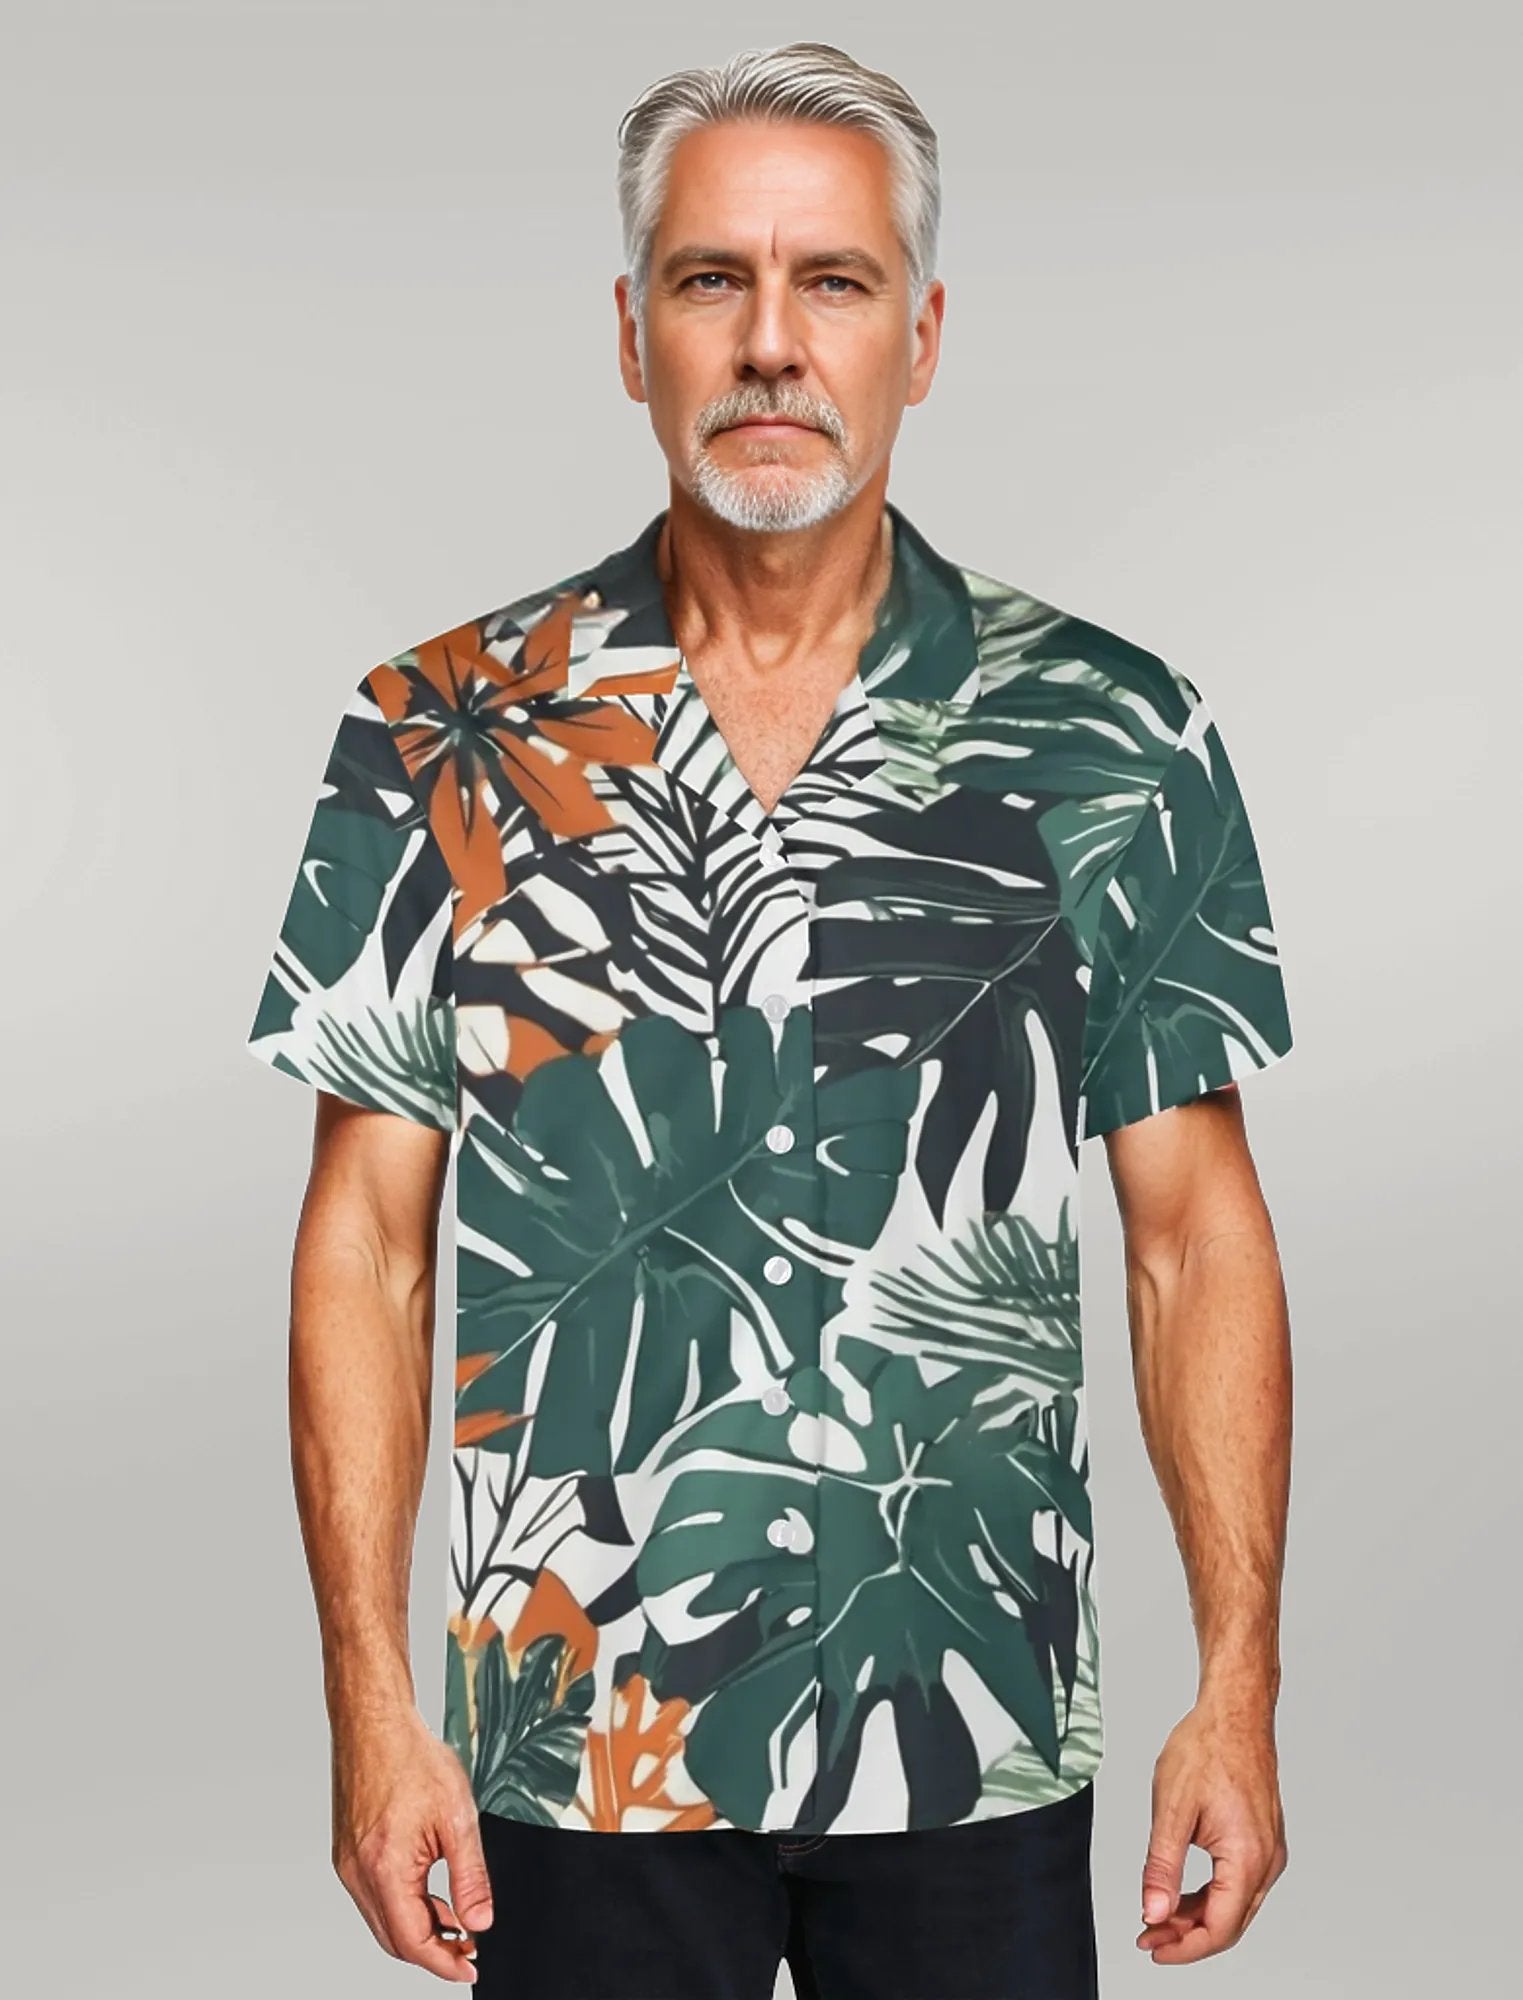 Jungle Voyage 2 Mens Casual Hawaiian Shirt